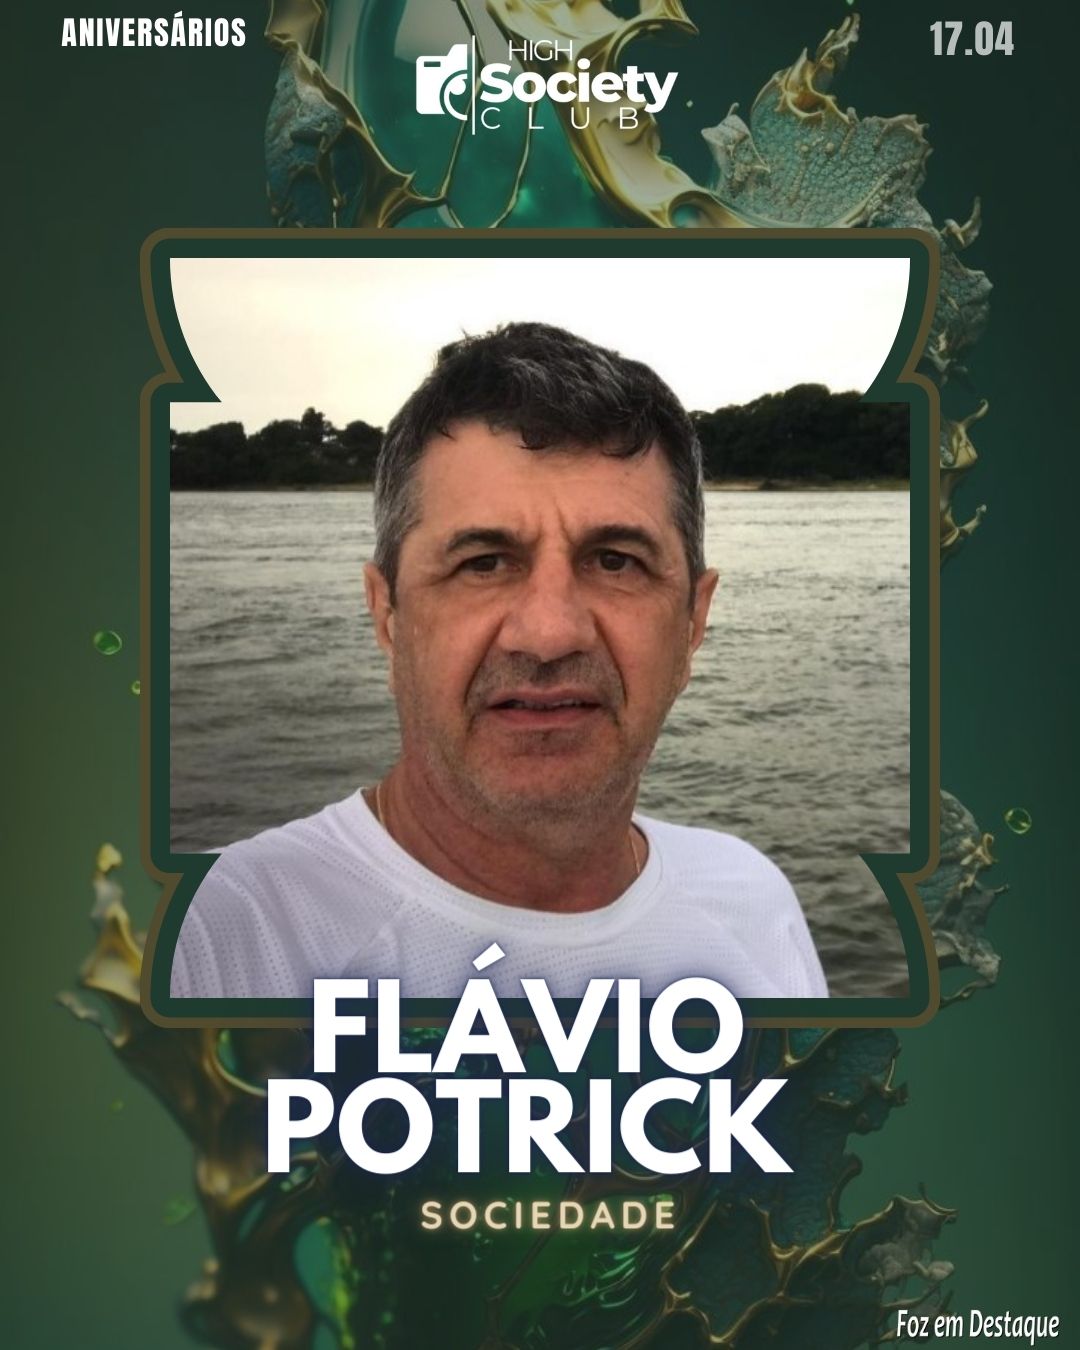 Flávio Potrick - High Society Club Foz em Destaque